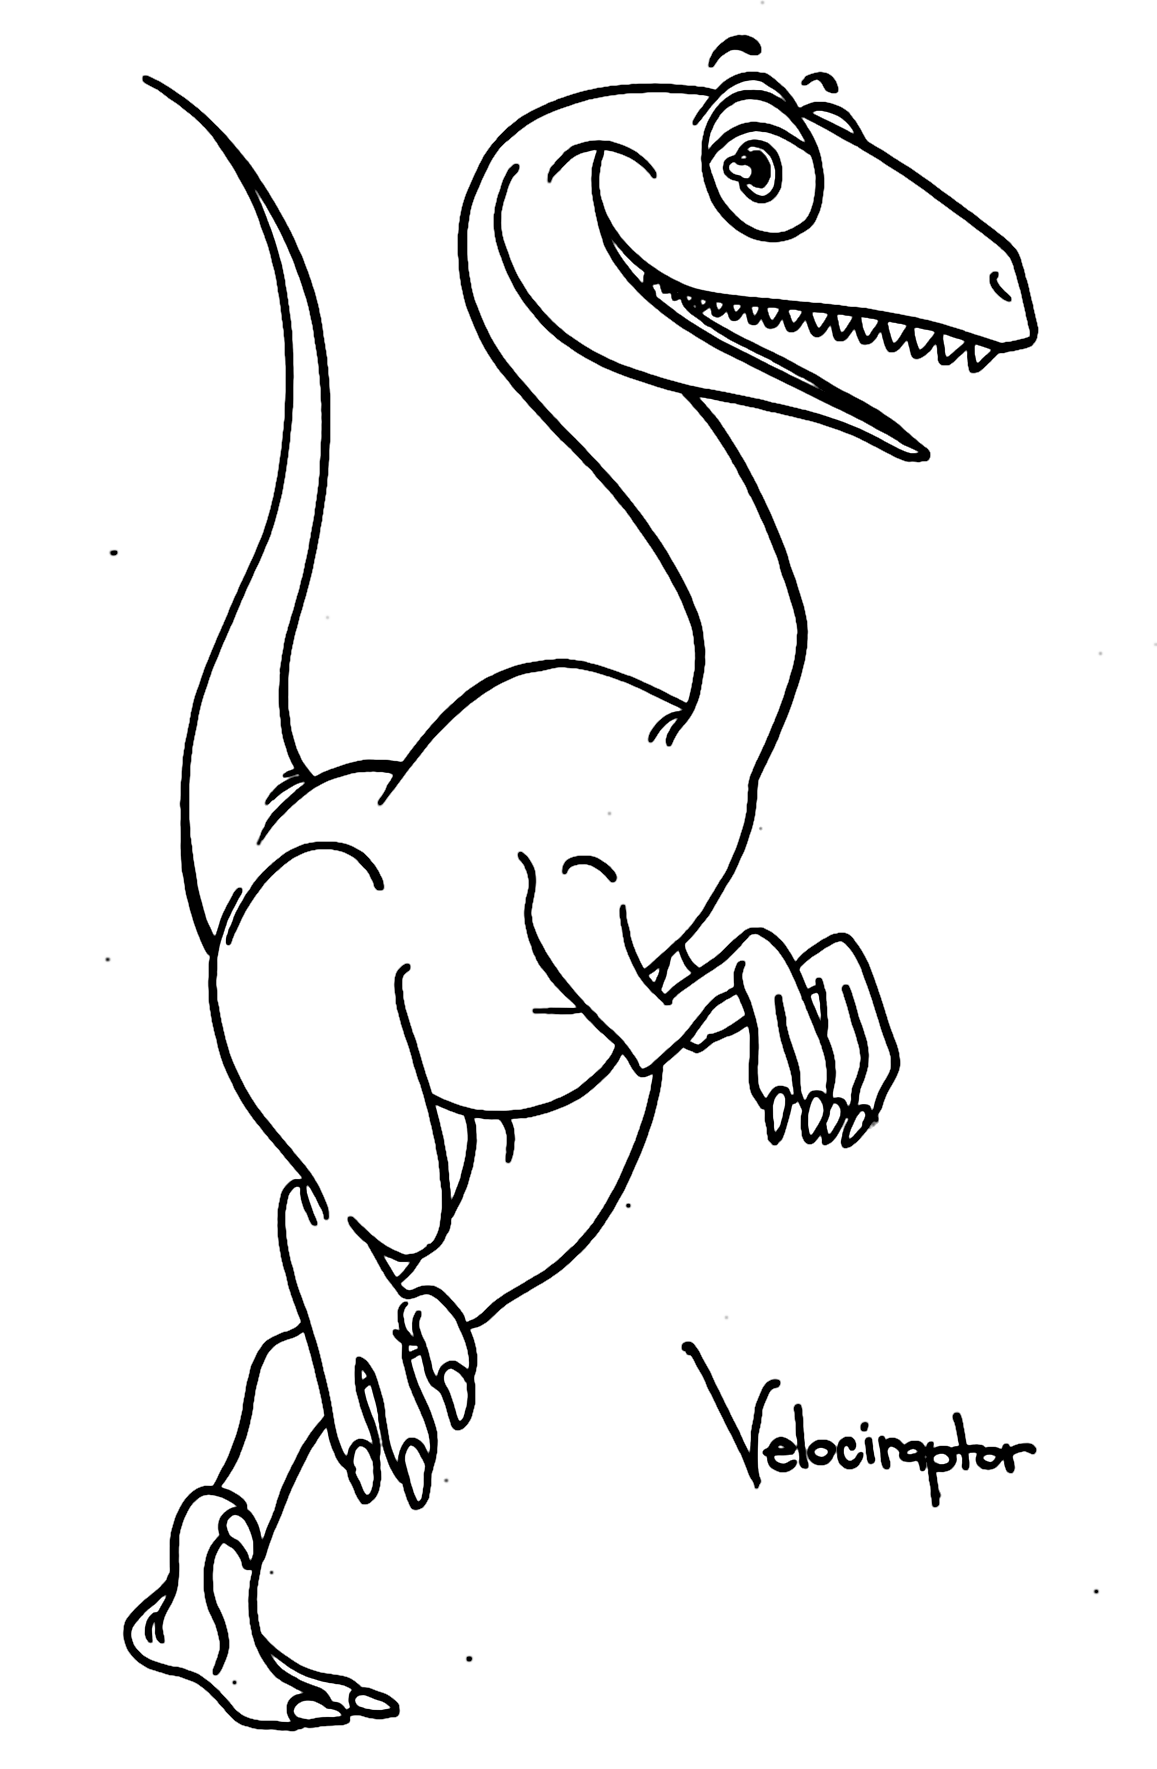 Velociraptor Coloring Pages - Páginas para colorear para niños y adultos